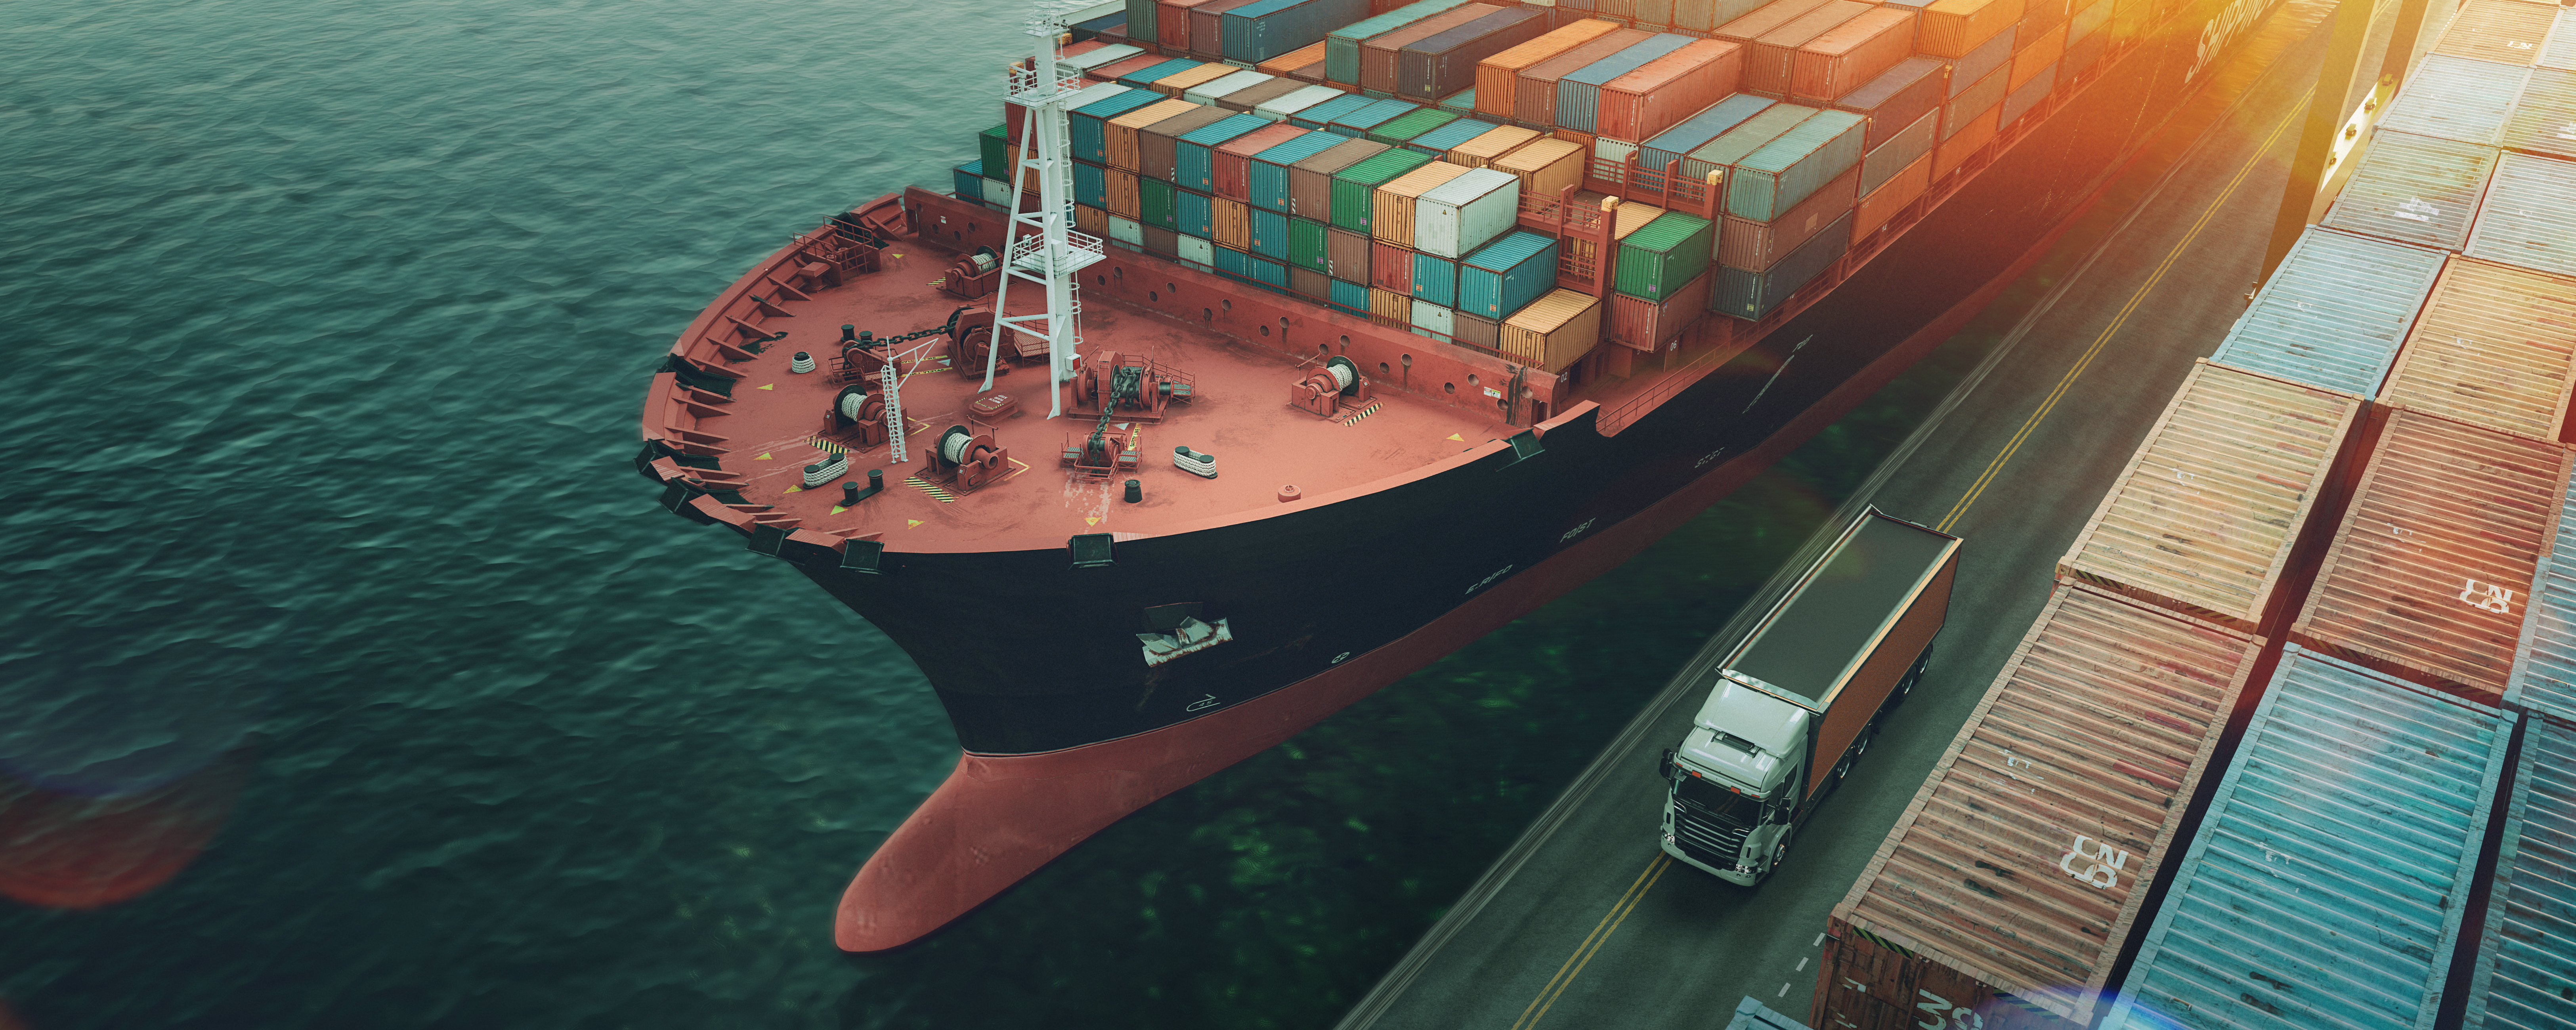 Přeprava a logistika kontejnerové nákladní lodi a nákladního letadla.3D vykreslování a ilustrace.